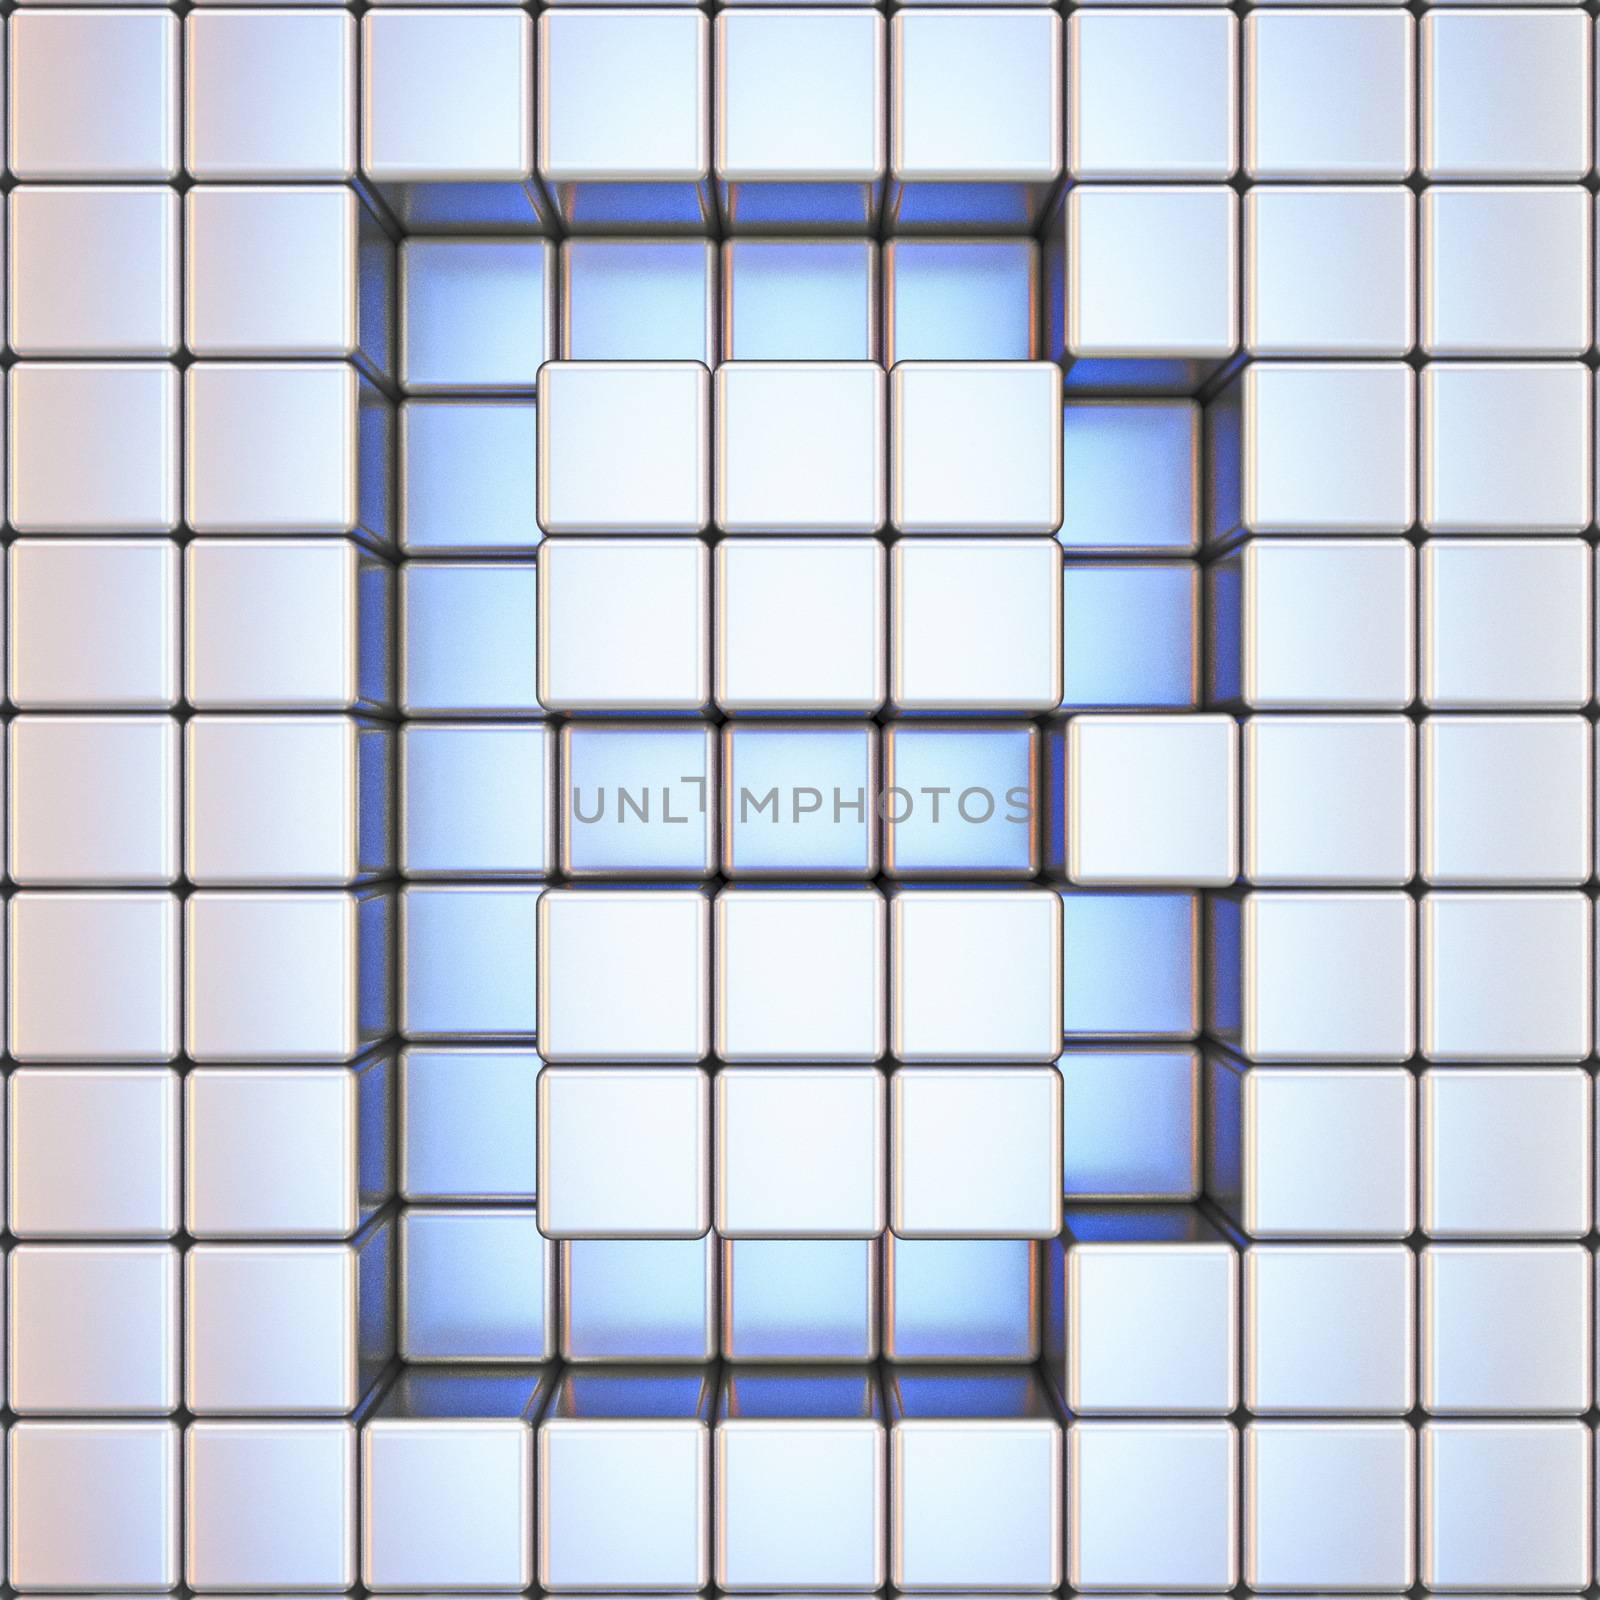 Cube grid Letter B 3D render illustration